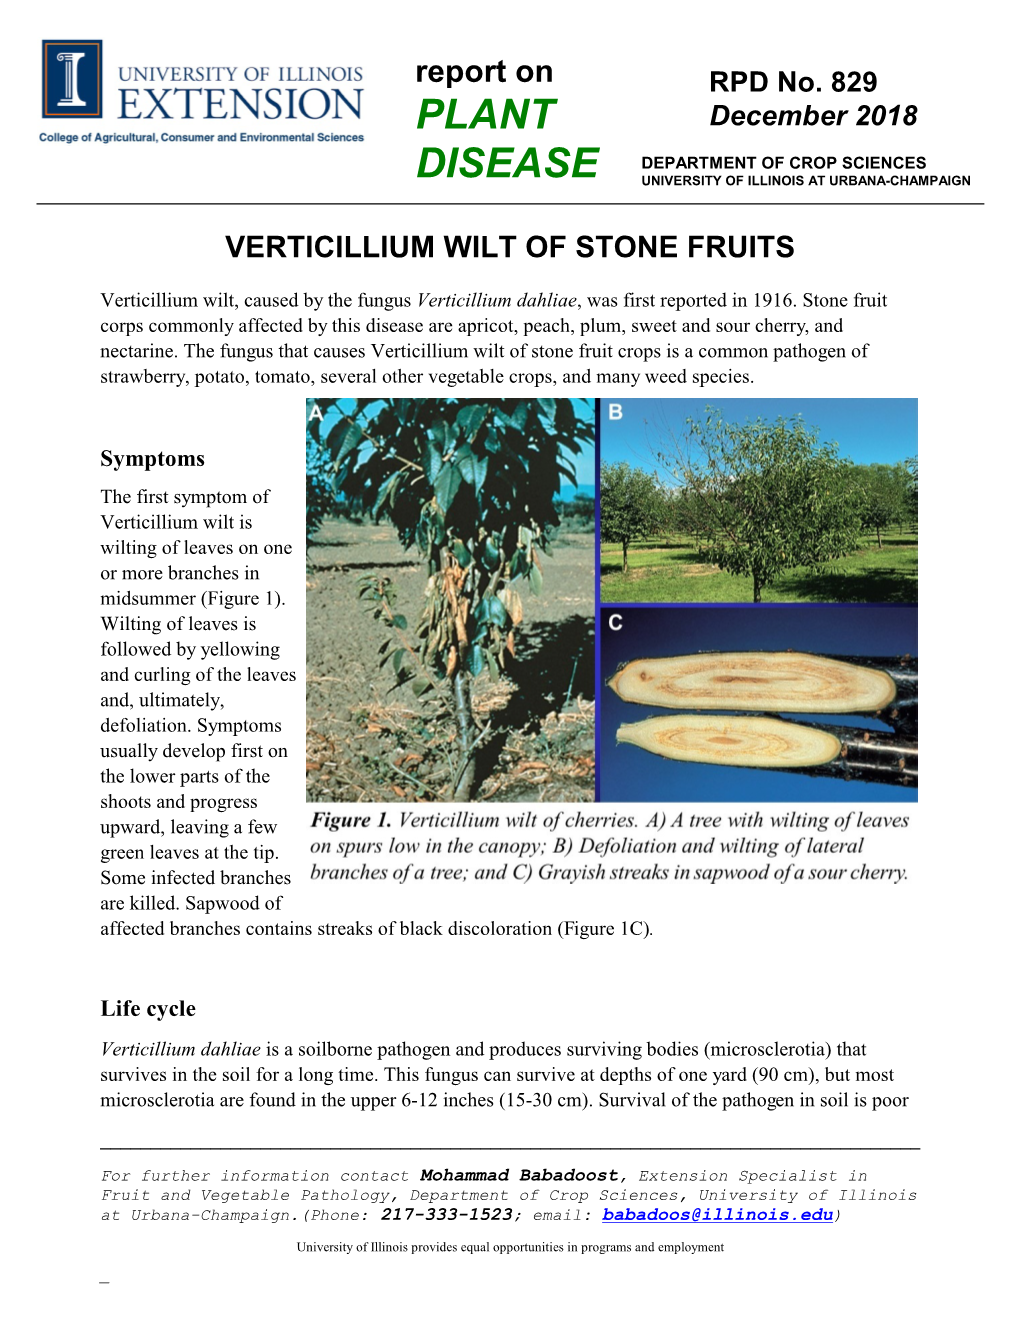 Verticillium Wilt of Stone Fruits